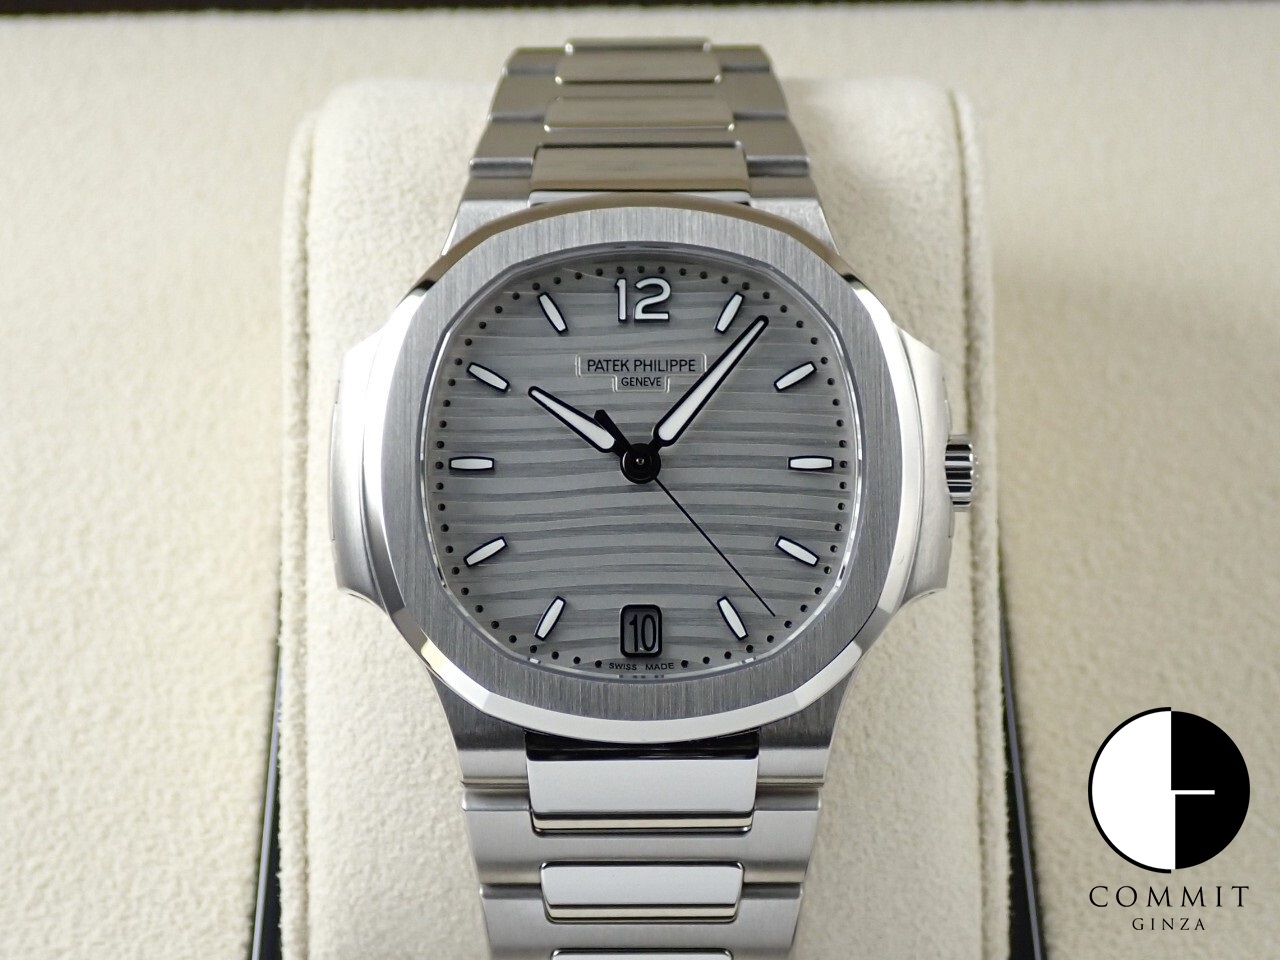 ノーチラス 新品・未使用品・中古品 販売腕時計一覧 | コミット銀座